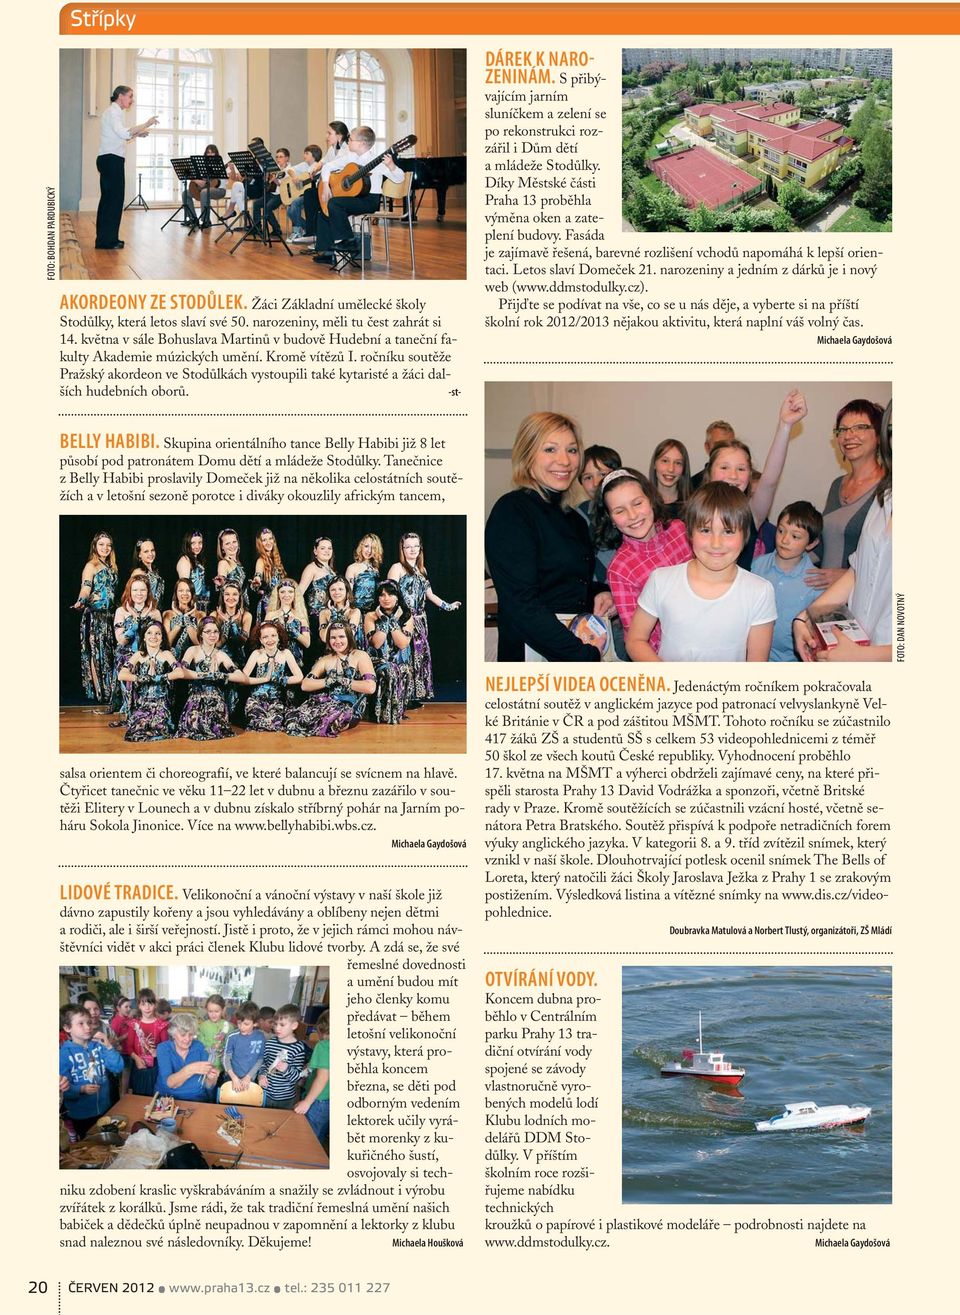 ročníku soutěže Pražský akordeon ve Stodůlkách vystoupili také kytaristé a žáci dalších hudebních oborů. -st- DÁREK K NARO- ZENINÁM.